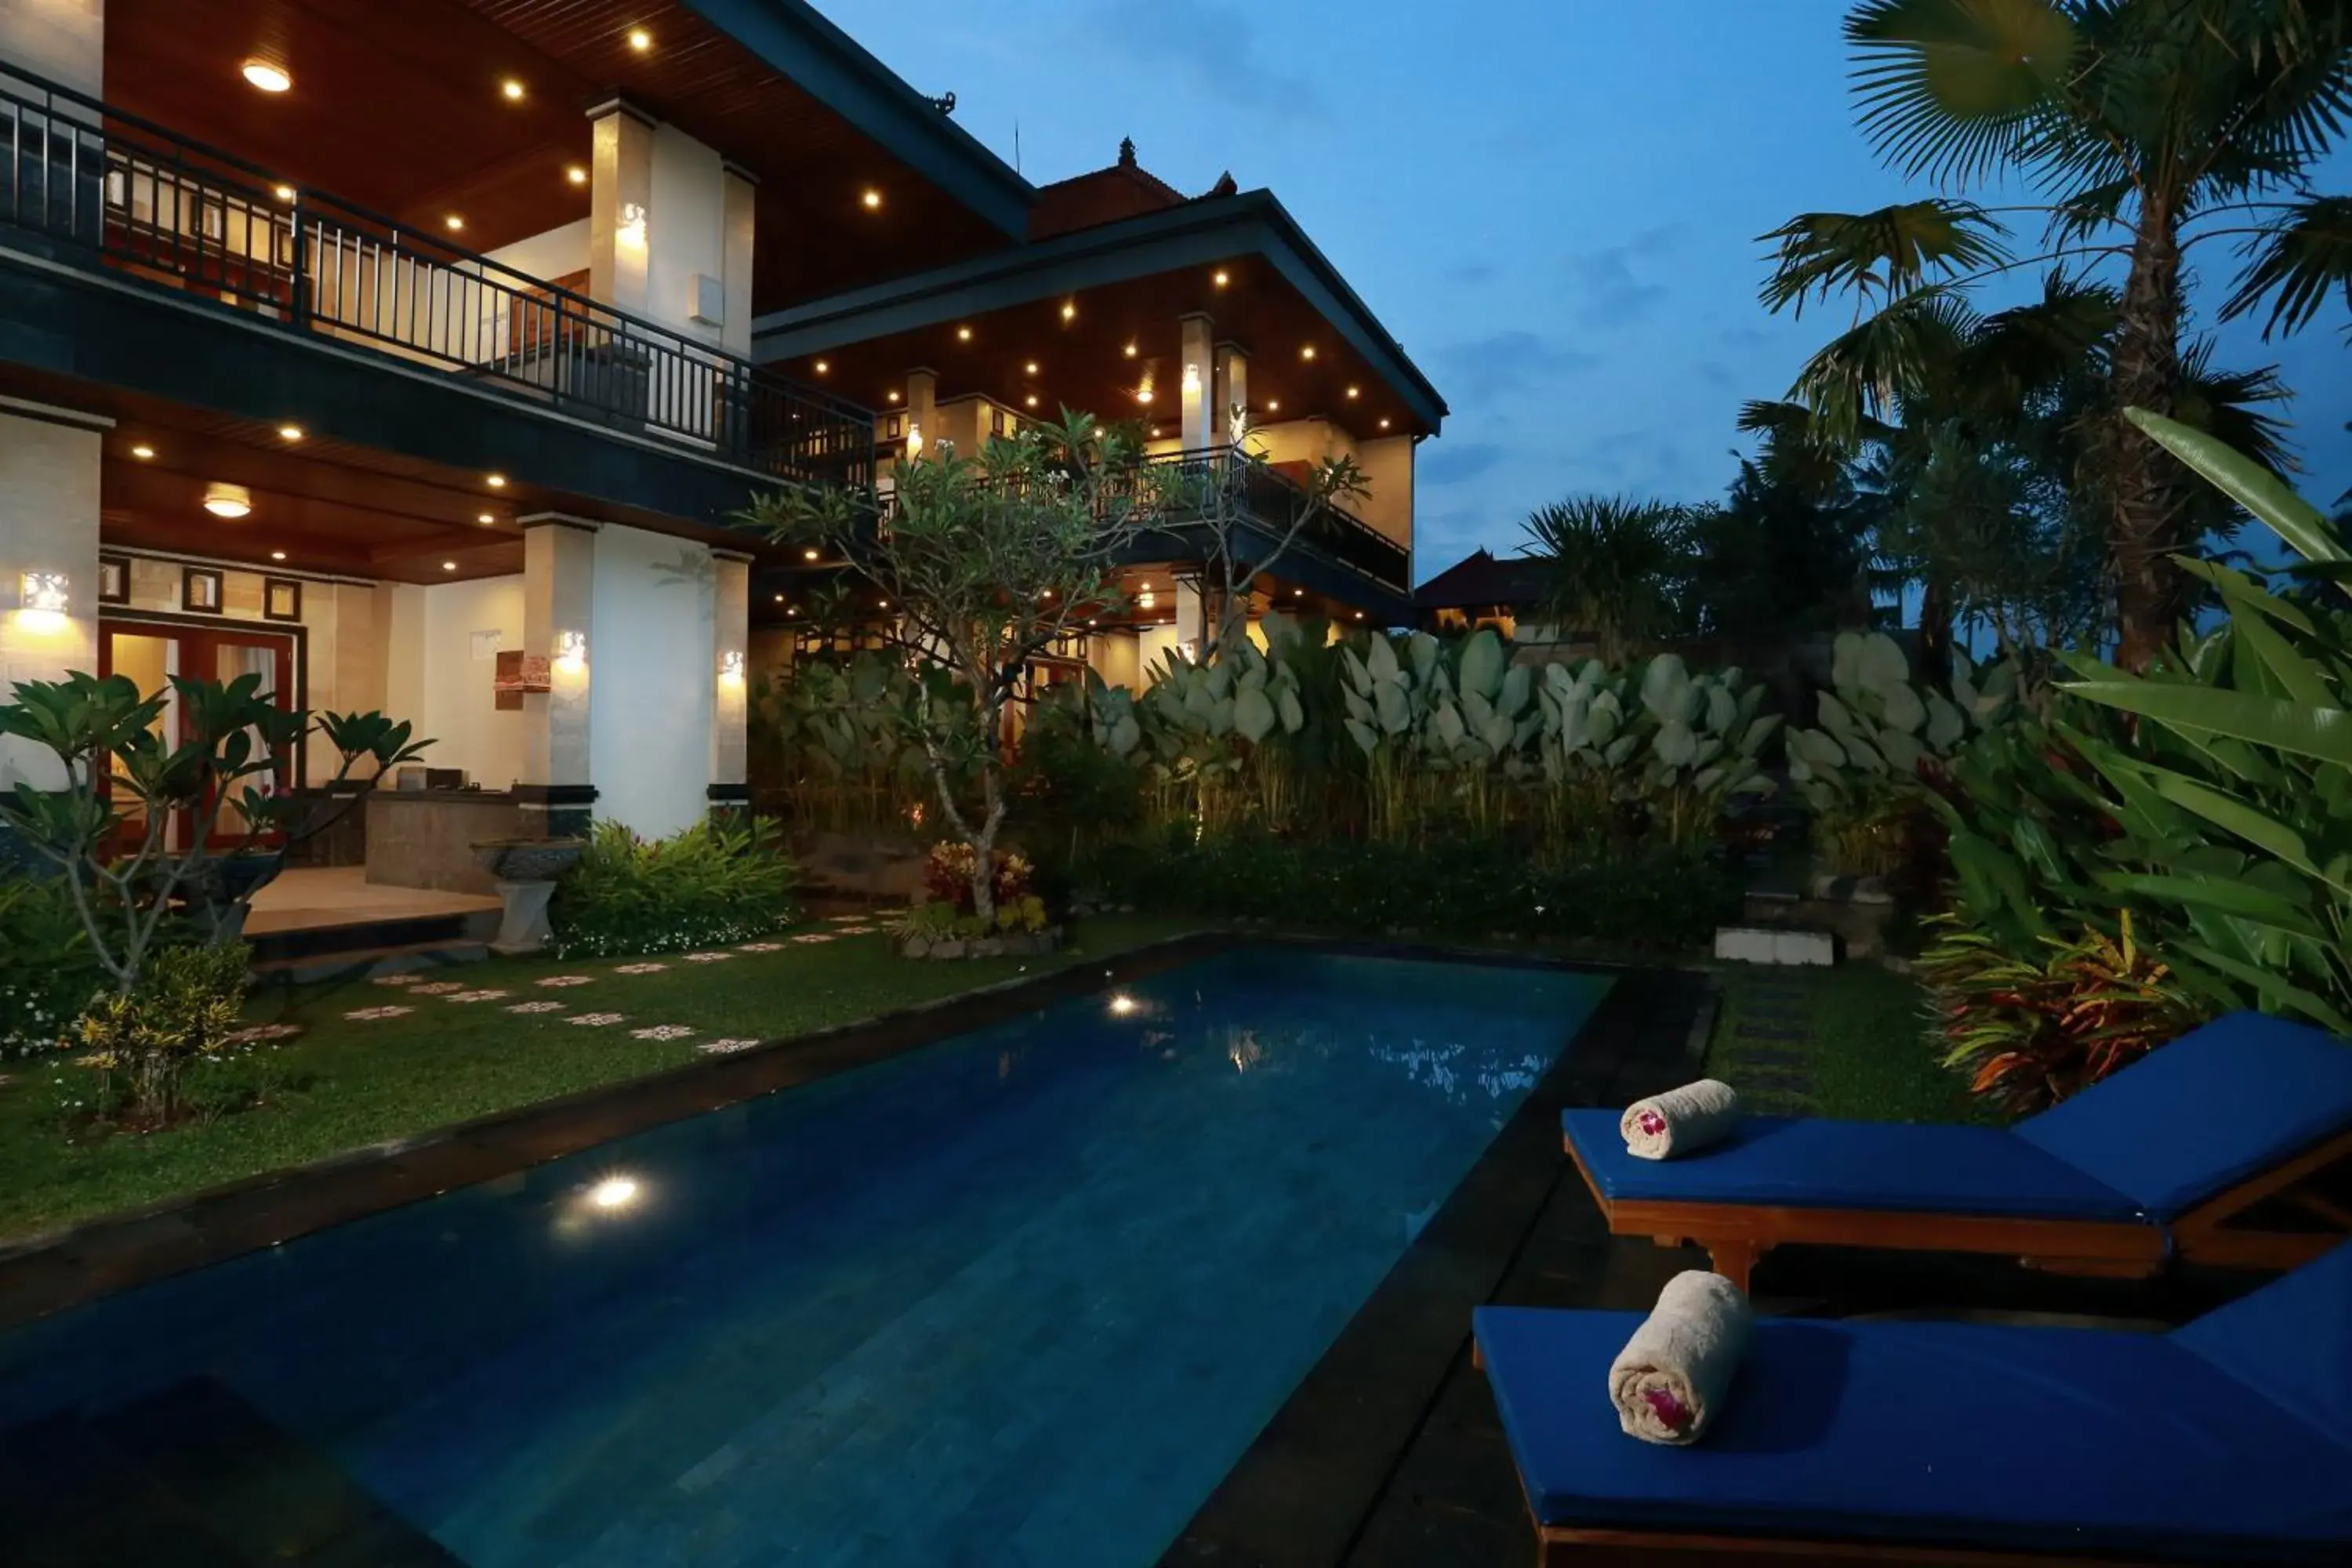 Swimming Pool in Dewi Sri Private Villa